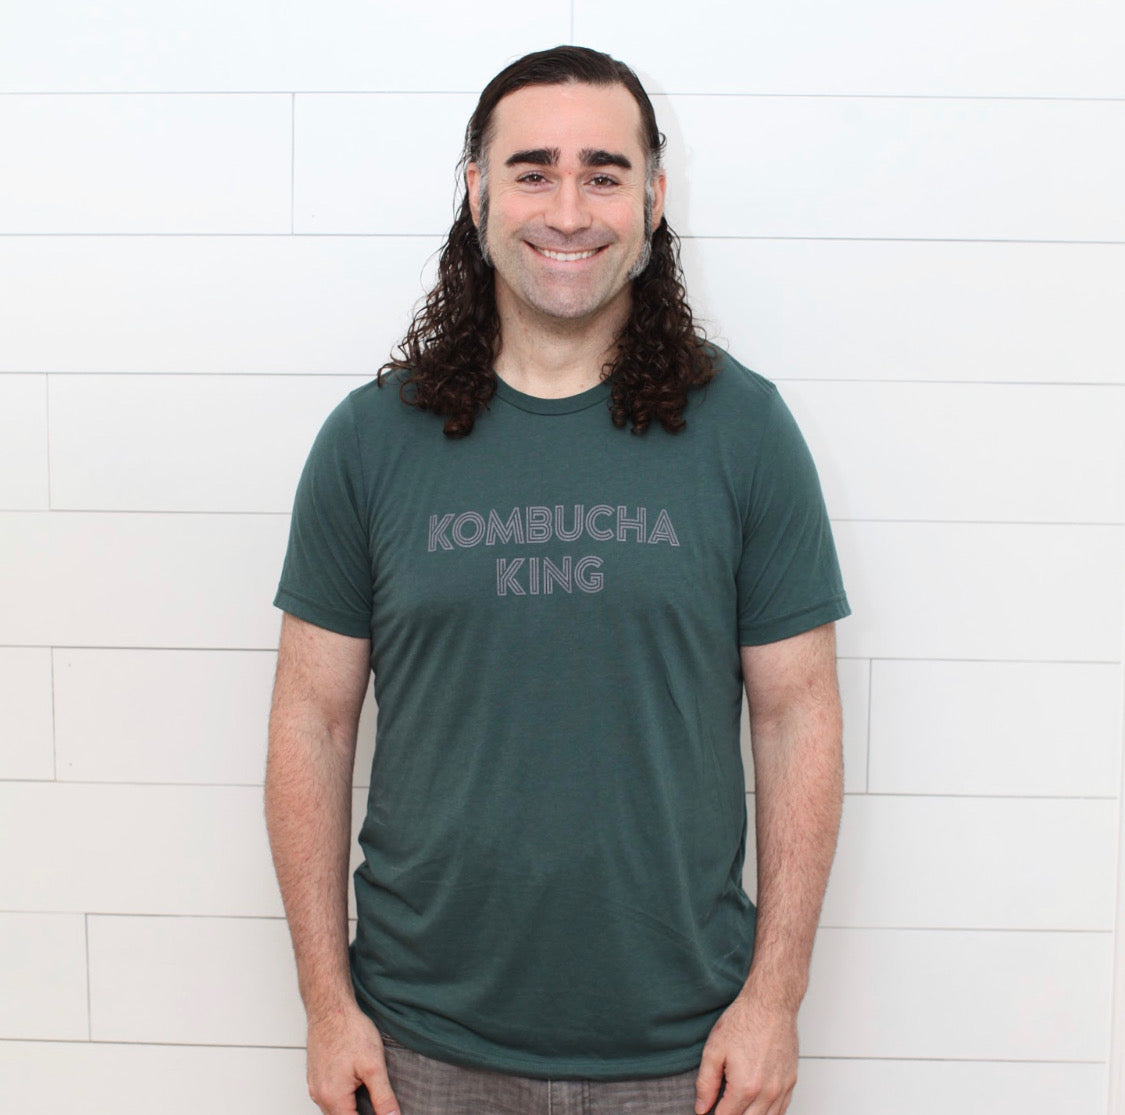 Forest Green Men's "Kombucha King" T shirt by YEABUCHA Kombucha